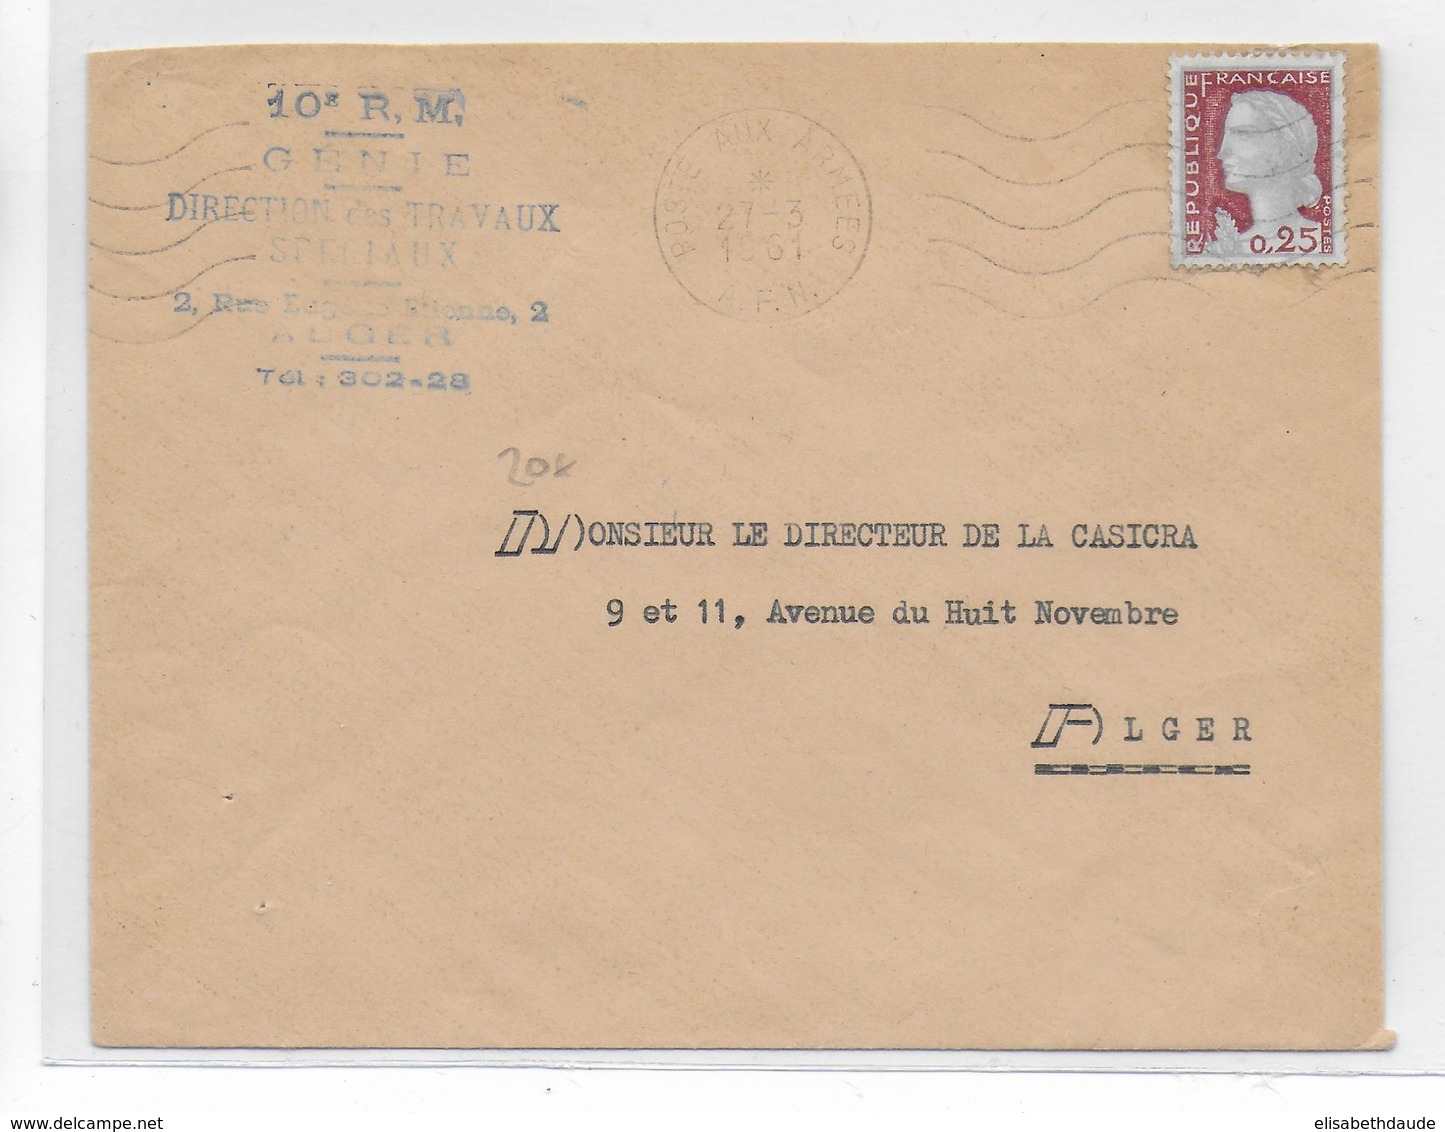 GUERRE D'ALGERIE - 1961 - DECARIS Sur ENVELOPPE Des ARMEES (10° R.M - GENIE) à ALGER - War Of Algeria